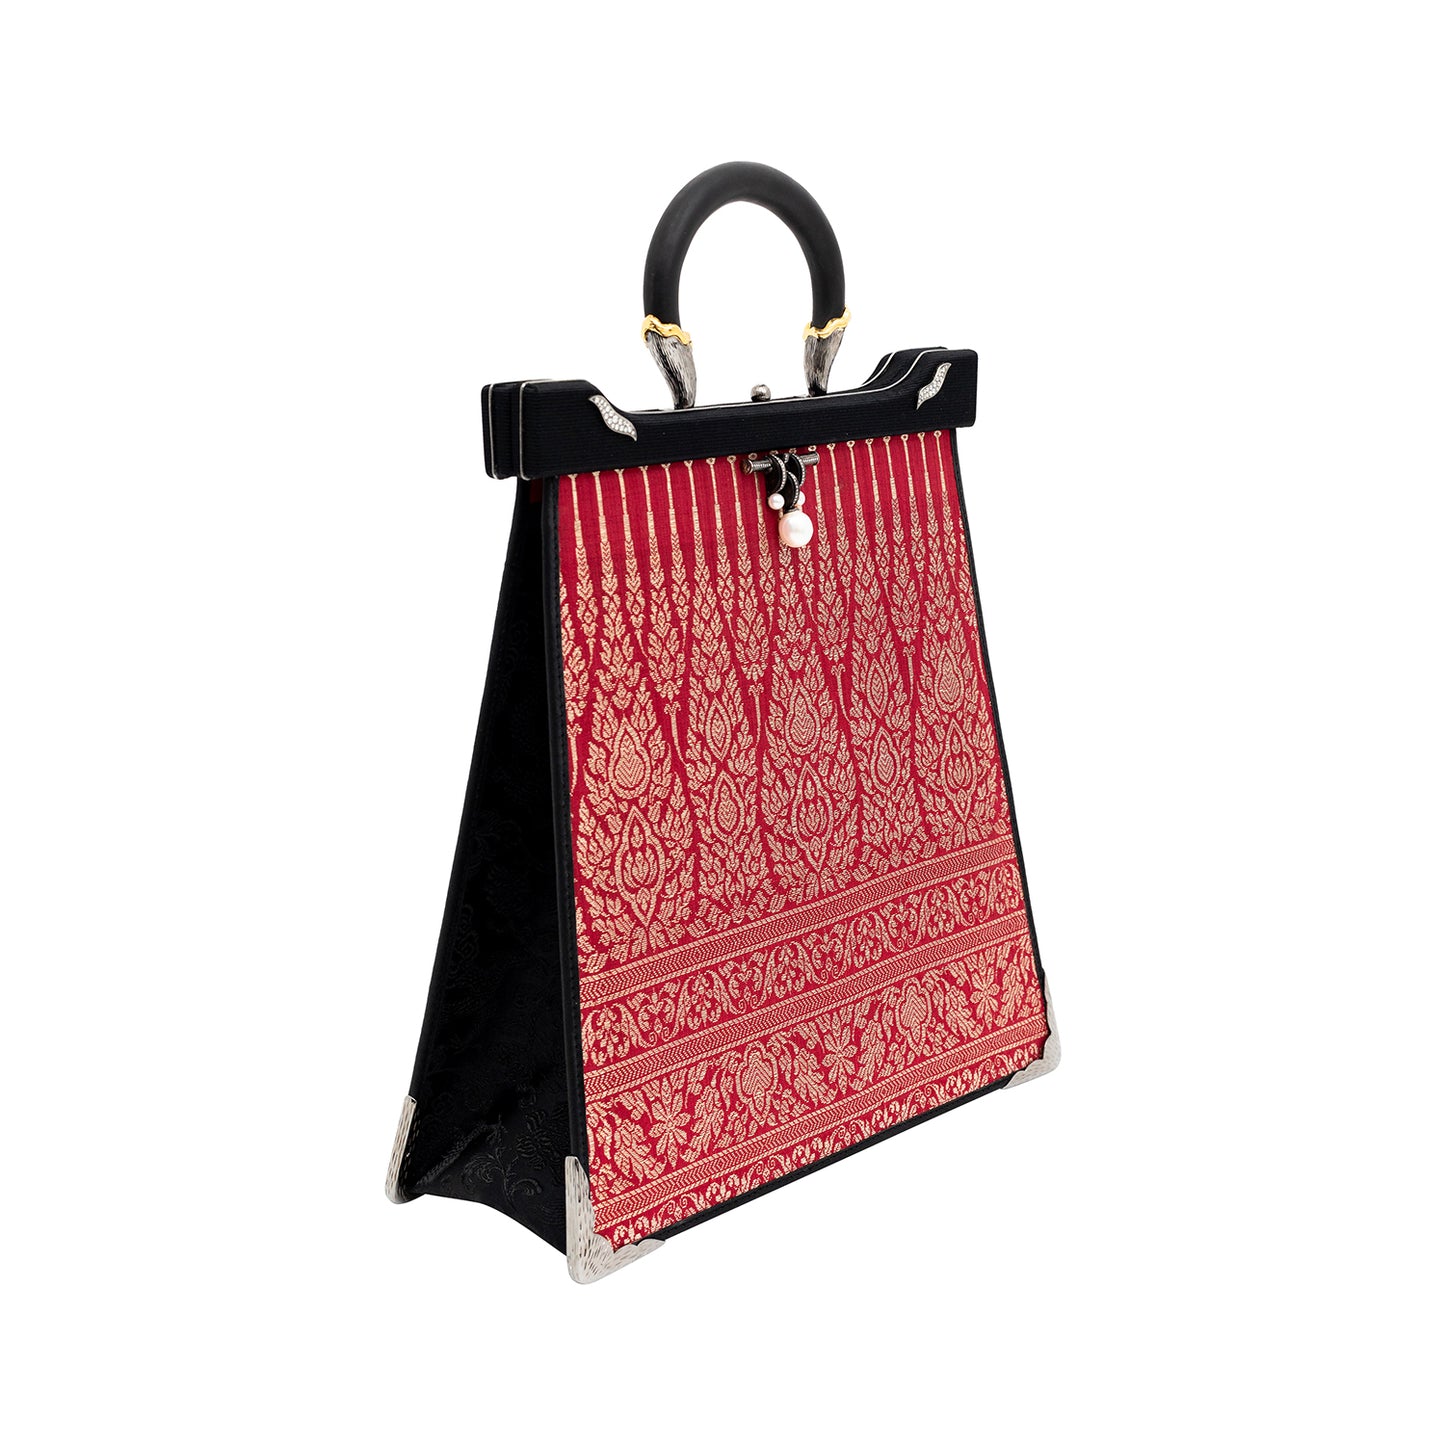 Silapacheep Textile Handbag with Pearl and Diamond